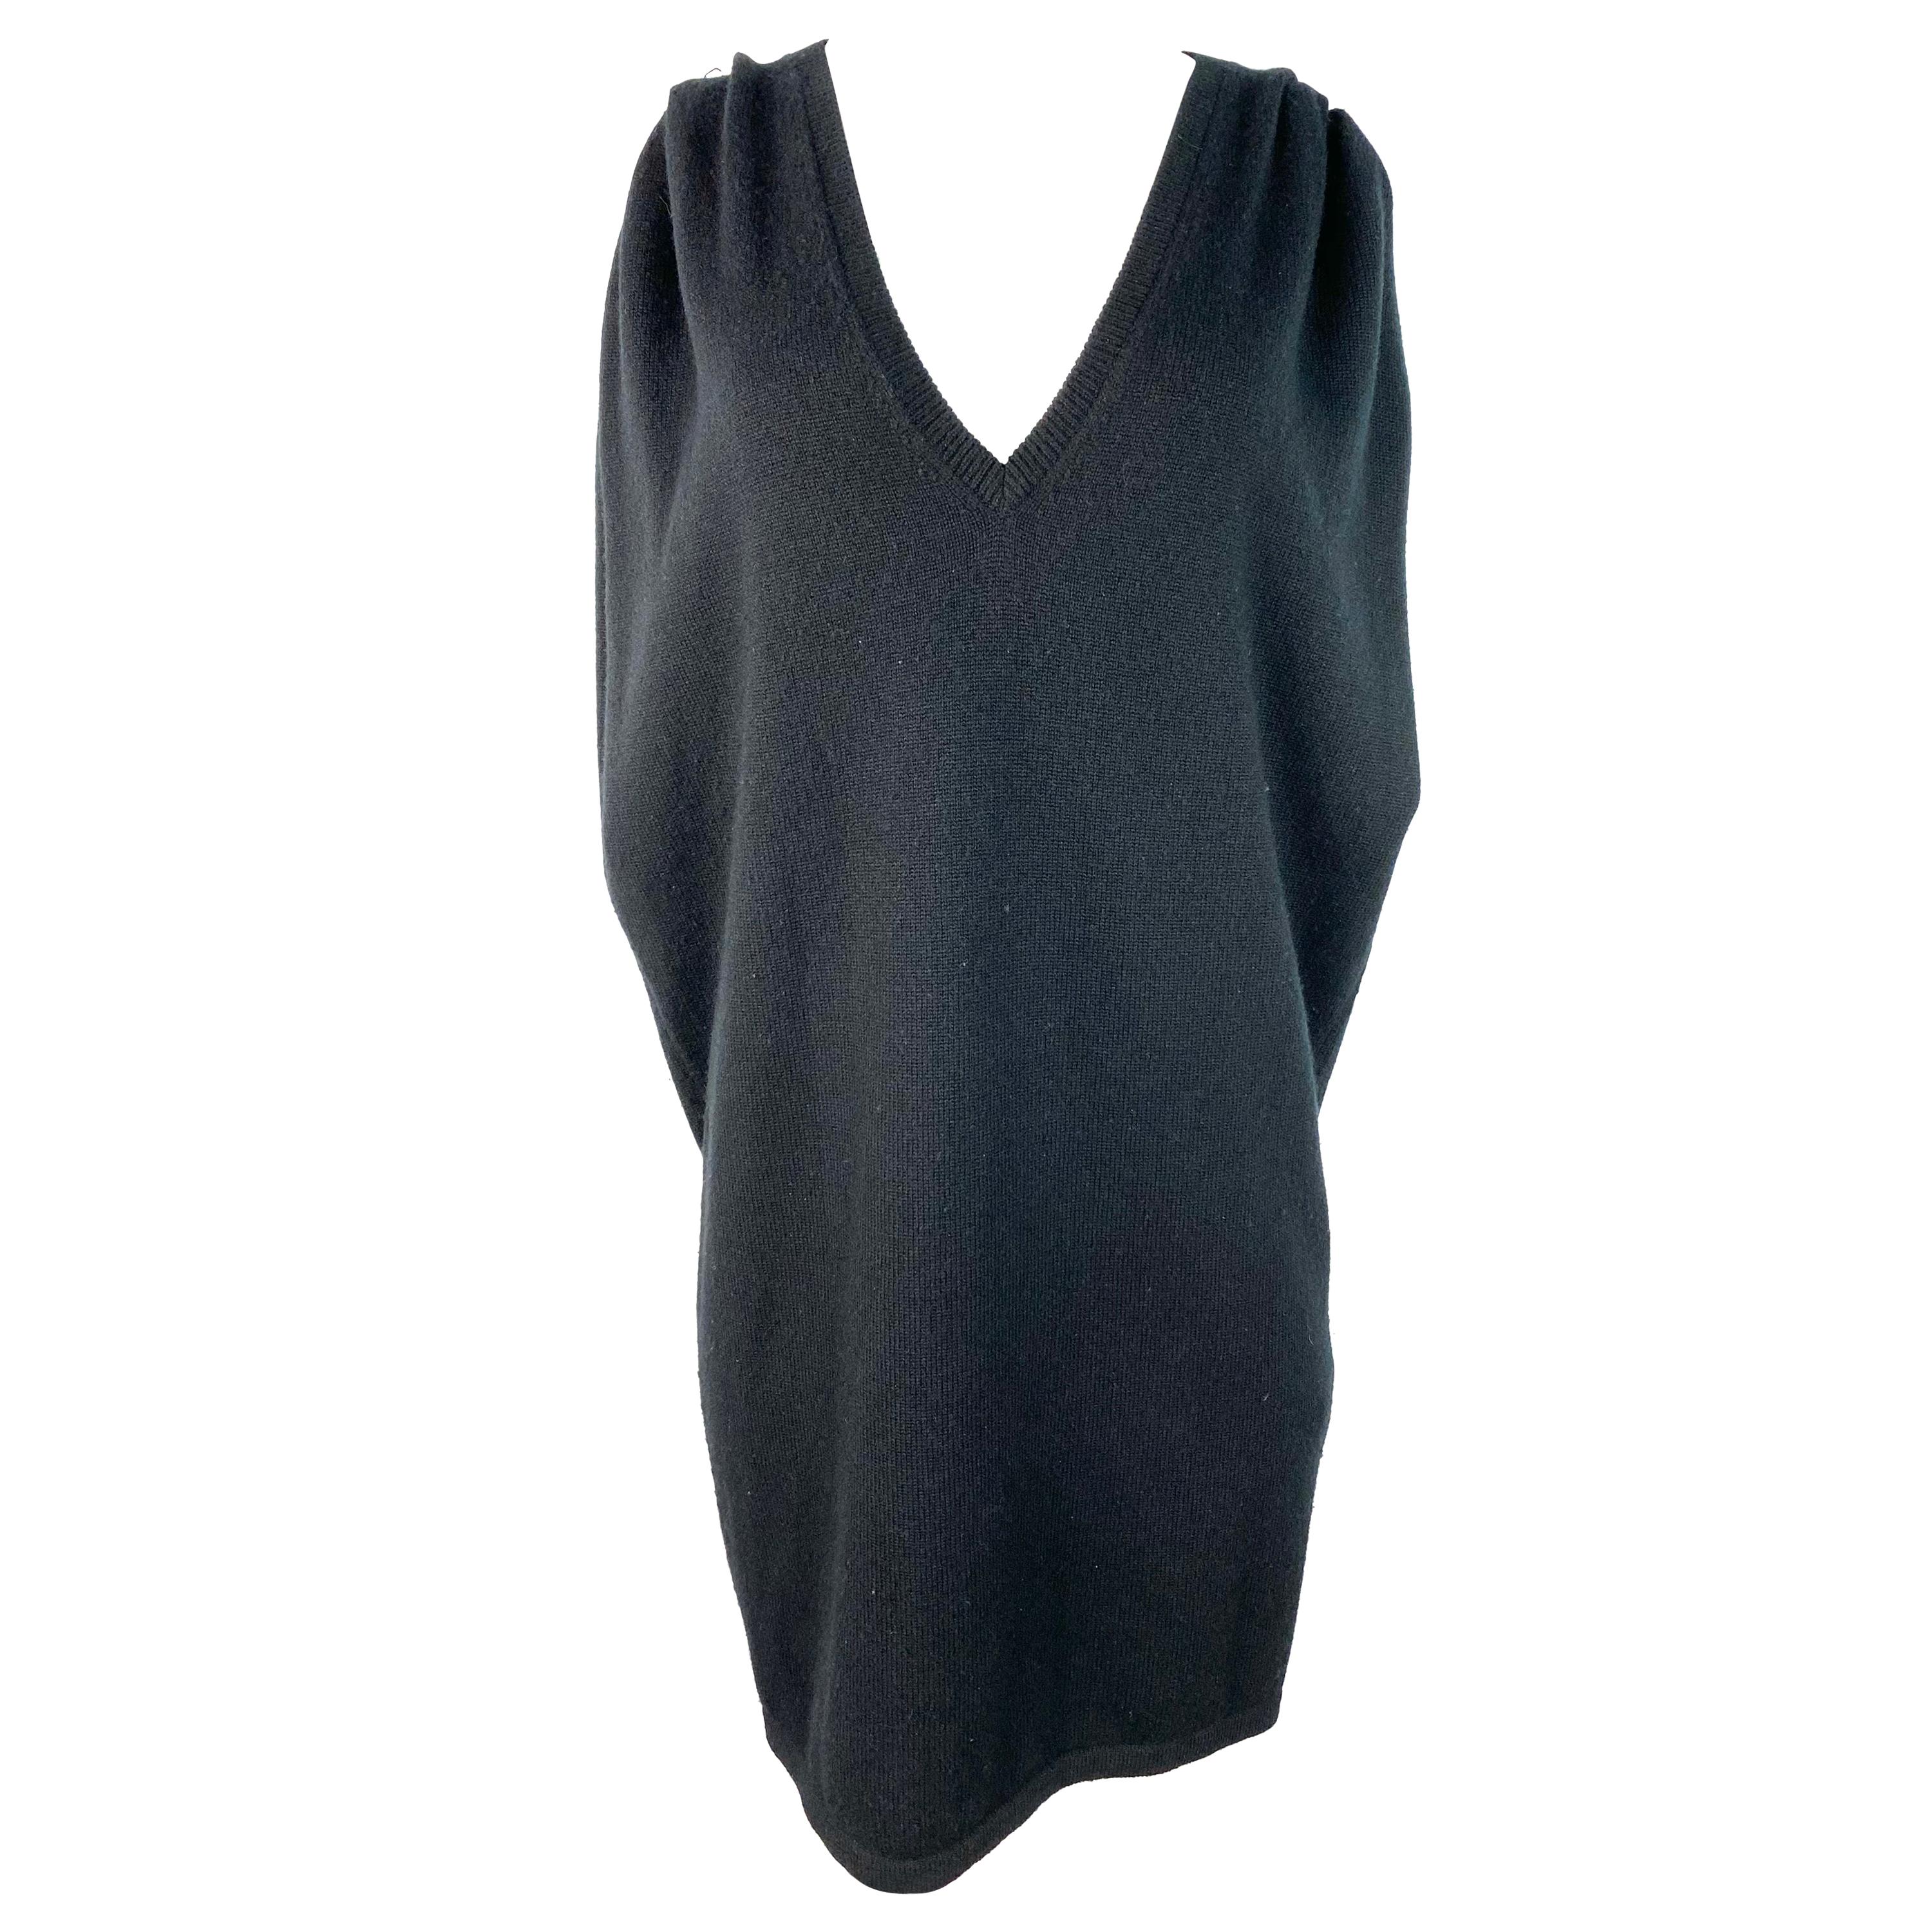 Vintage Saint Laurent Paris Black Knit Vest Dress, Size L